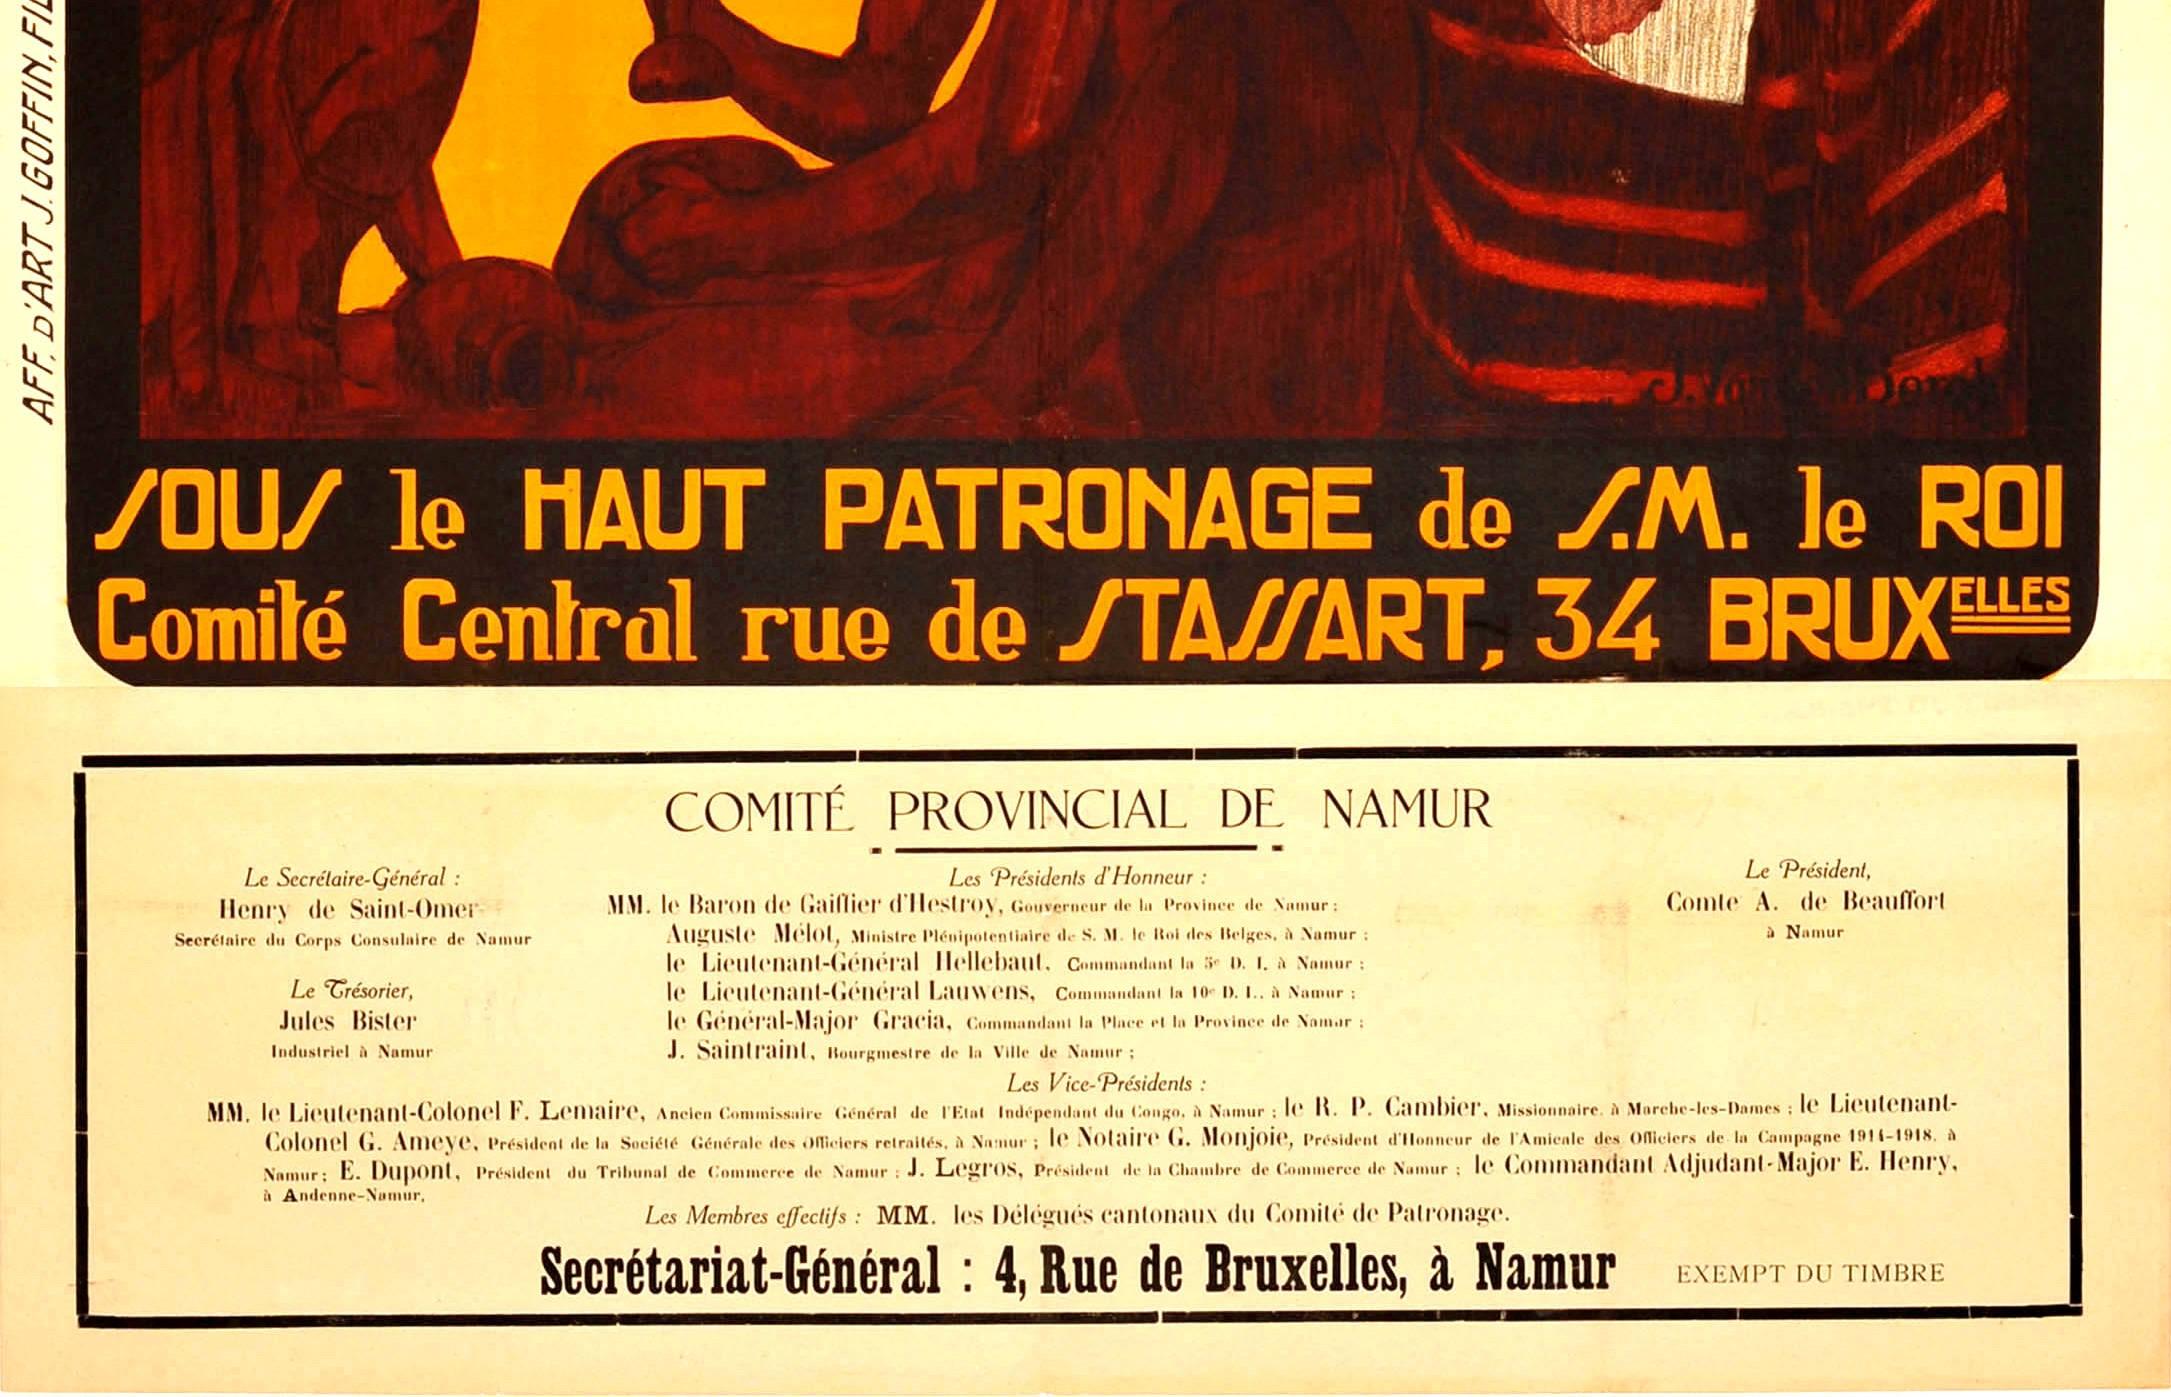 Originales Vintage-Plakat für den Journee Coloniale 1 Juillet 1923 / Kolonialtag am 1. Juli 1923 mit einer großartigen Illustration einer afrikanischen Mutter, die ihr kleines Kind im Arm hält, mit zwei Männern, die neben ihnen sitzen, und einem